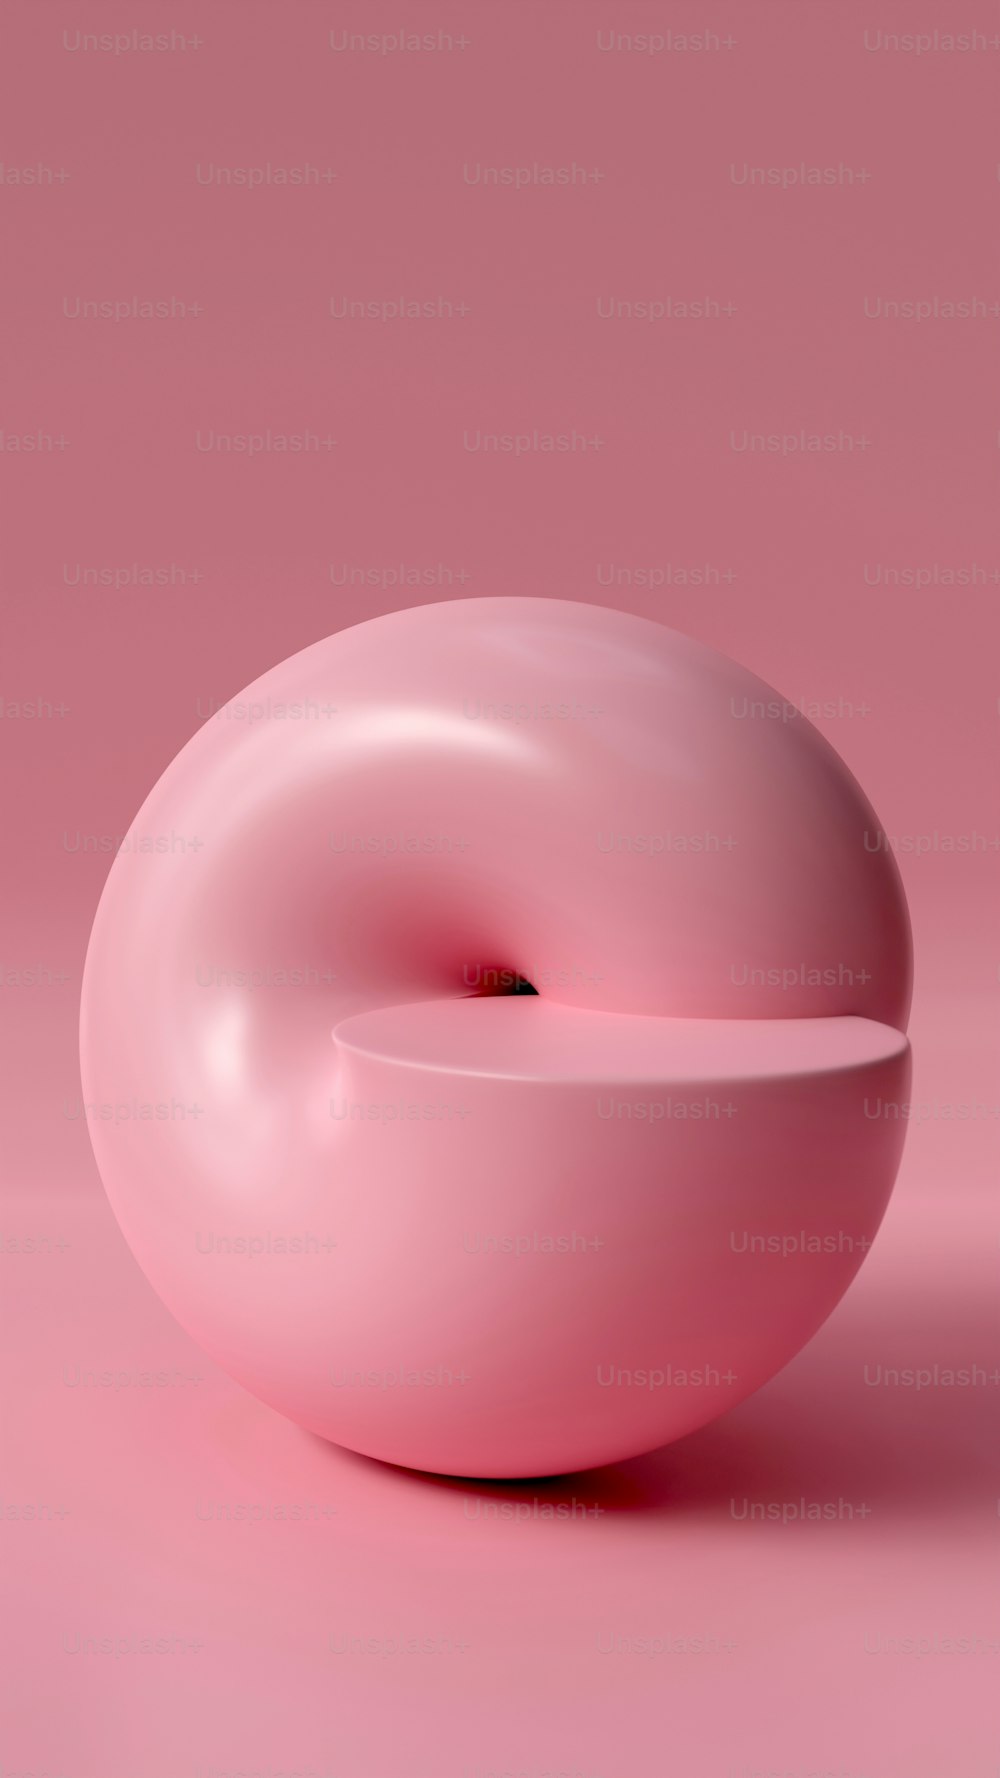 분�홍색 표면 위에 앉아 있는 분홍색 도넛